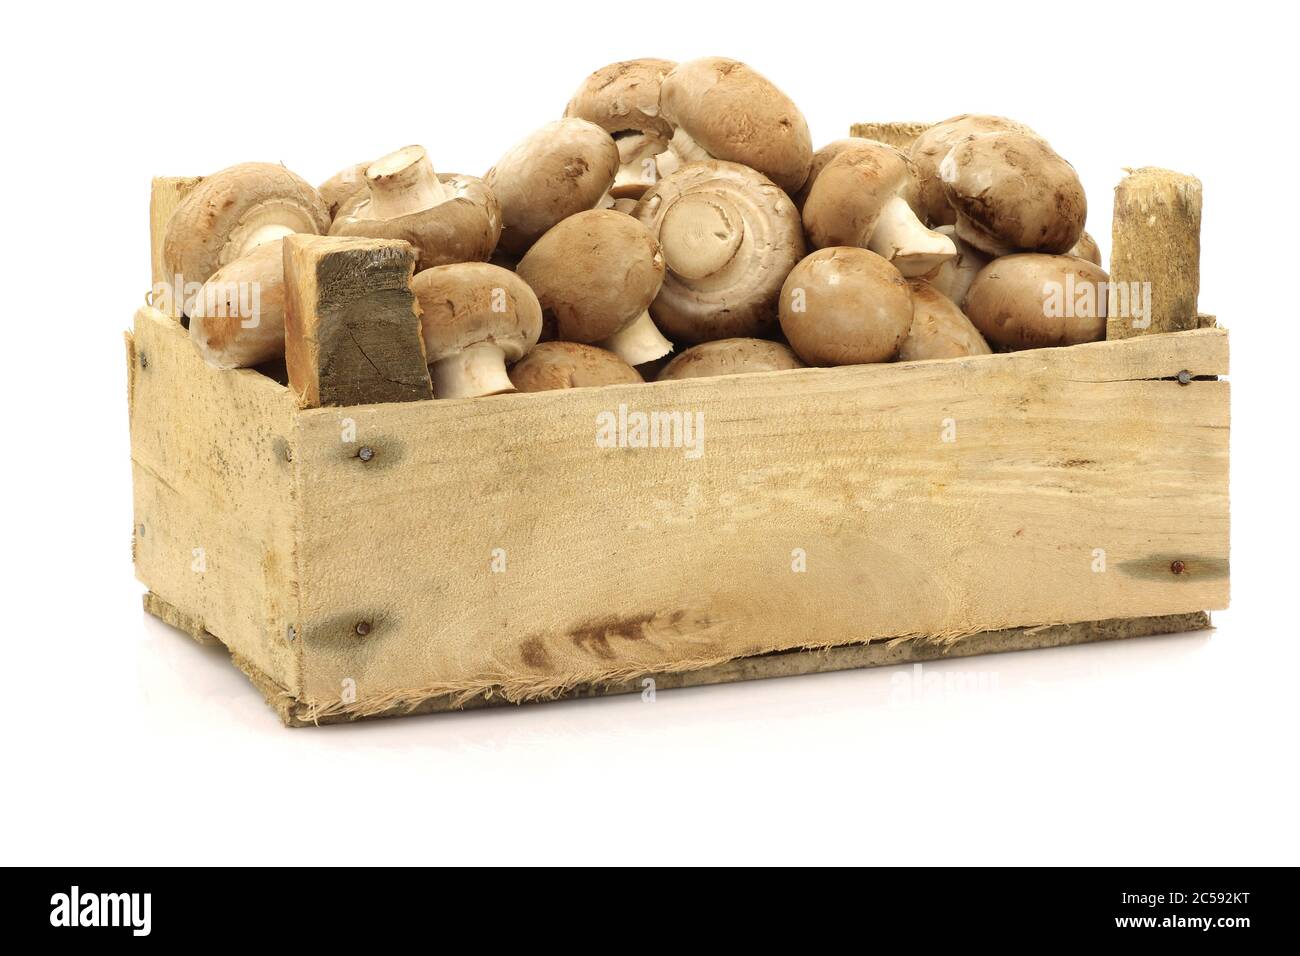 Champignon-Pilze in einer Holzkiste auf weißem Grund braun anbraten Stockfoto